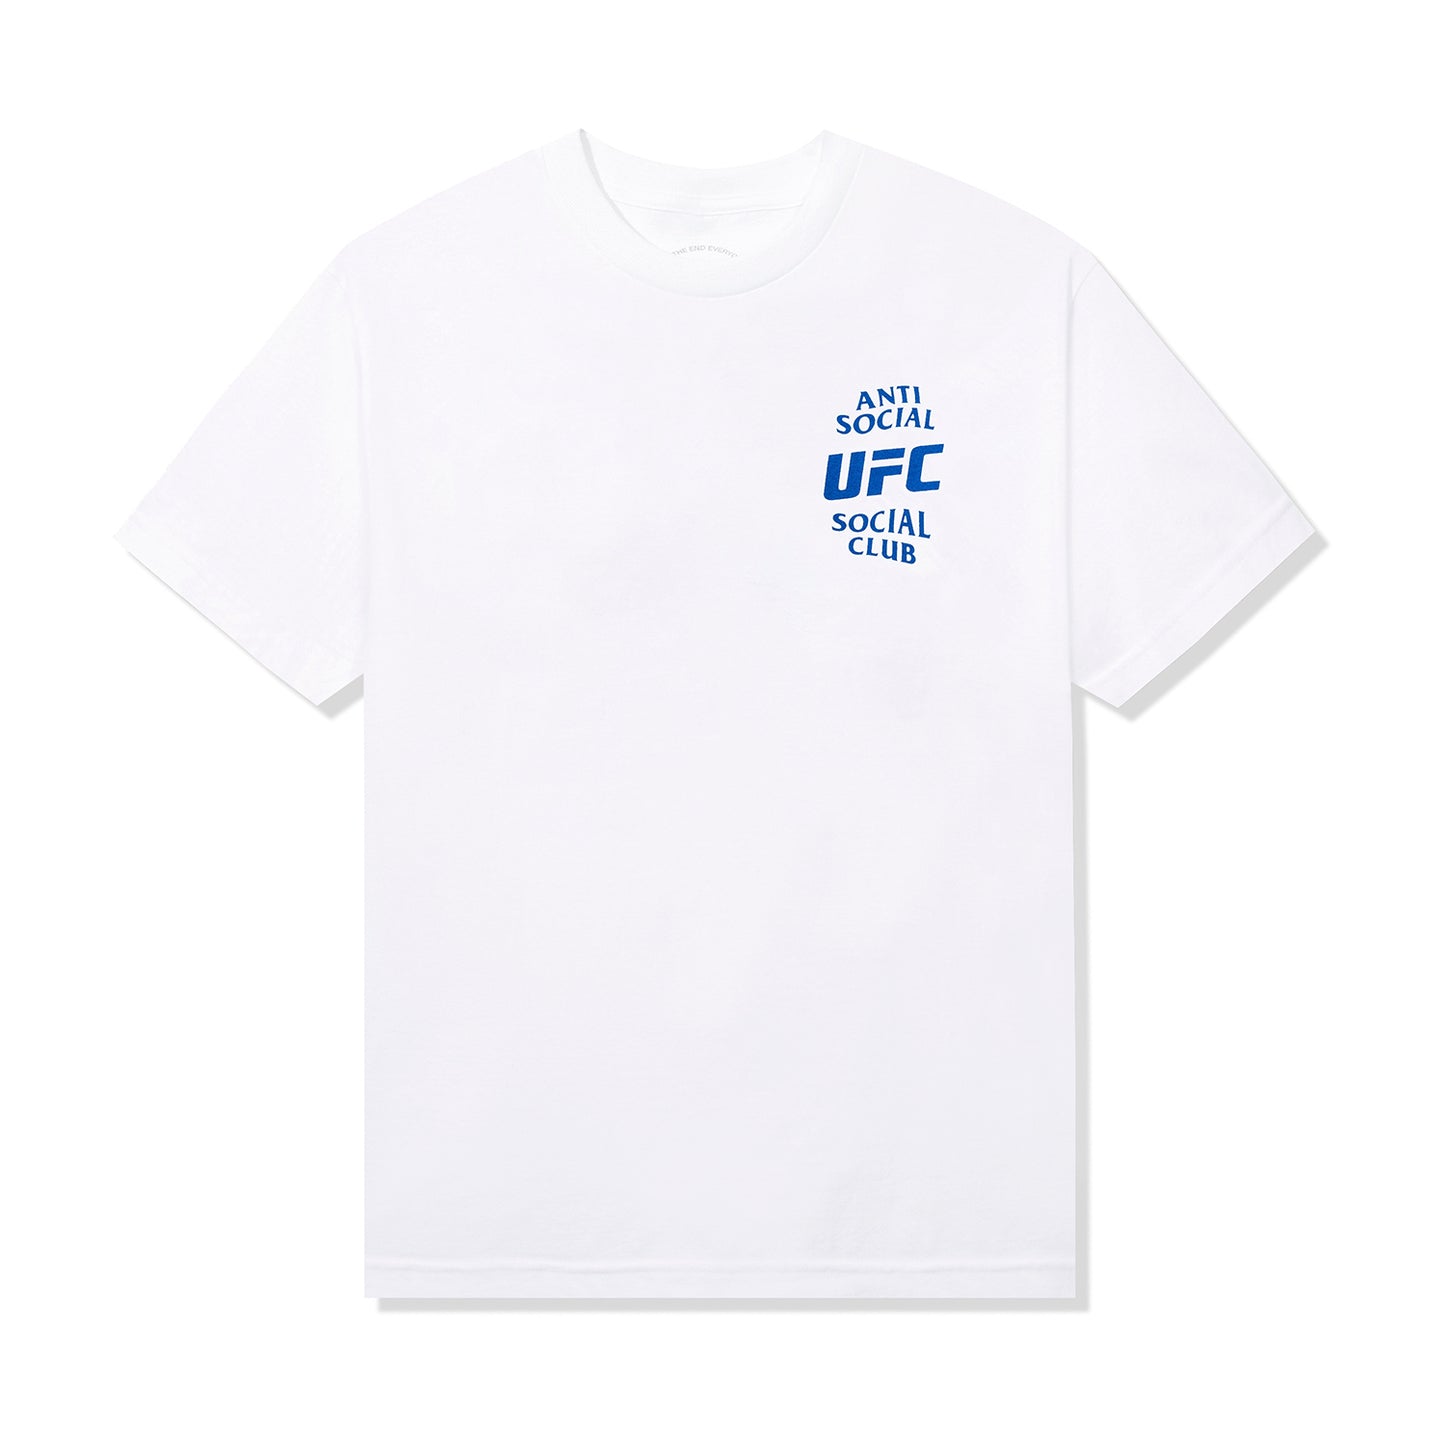 ASSC x UFC Self-Titled Tee - White